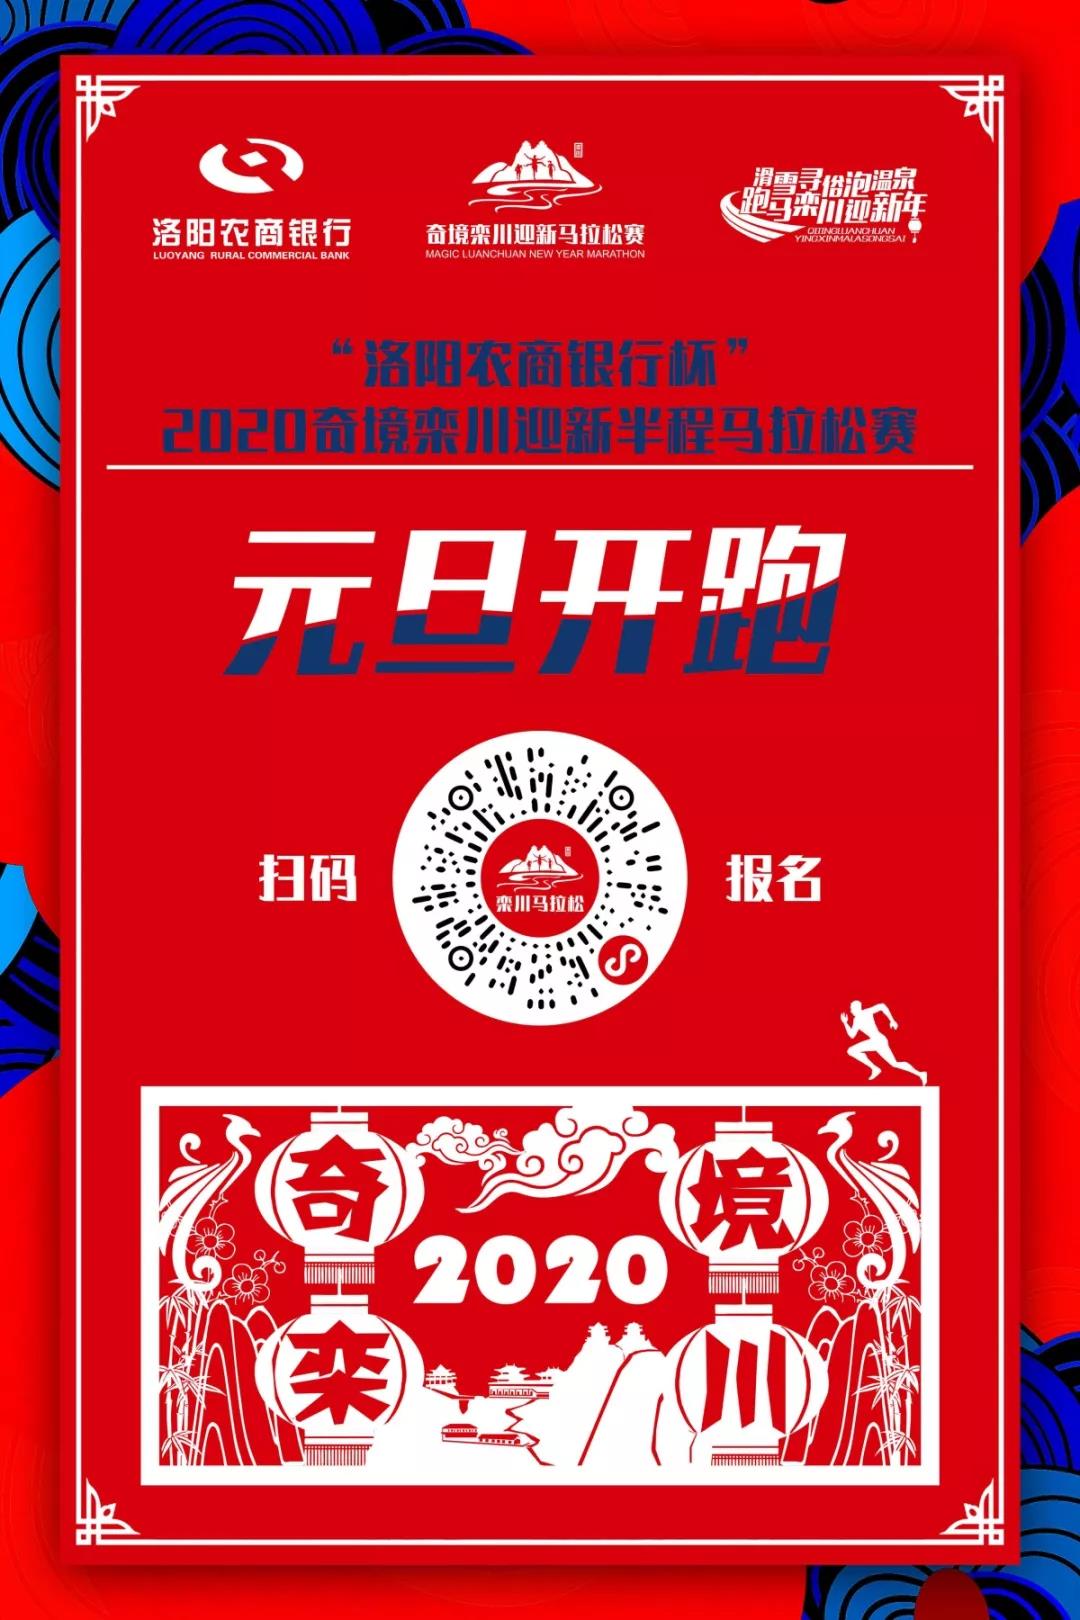 栾川：洛阳农商银行杯”2020奇境栾川迎新半程马拉松赛 1月1日将正式开赛